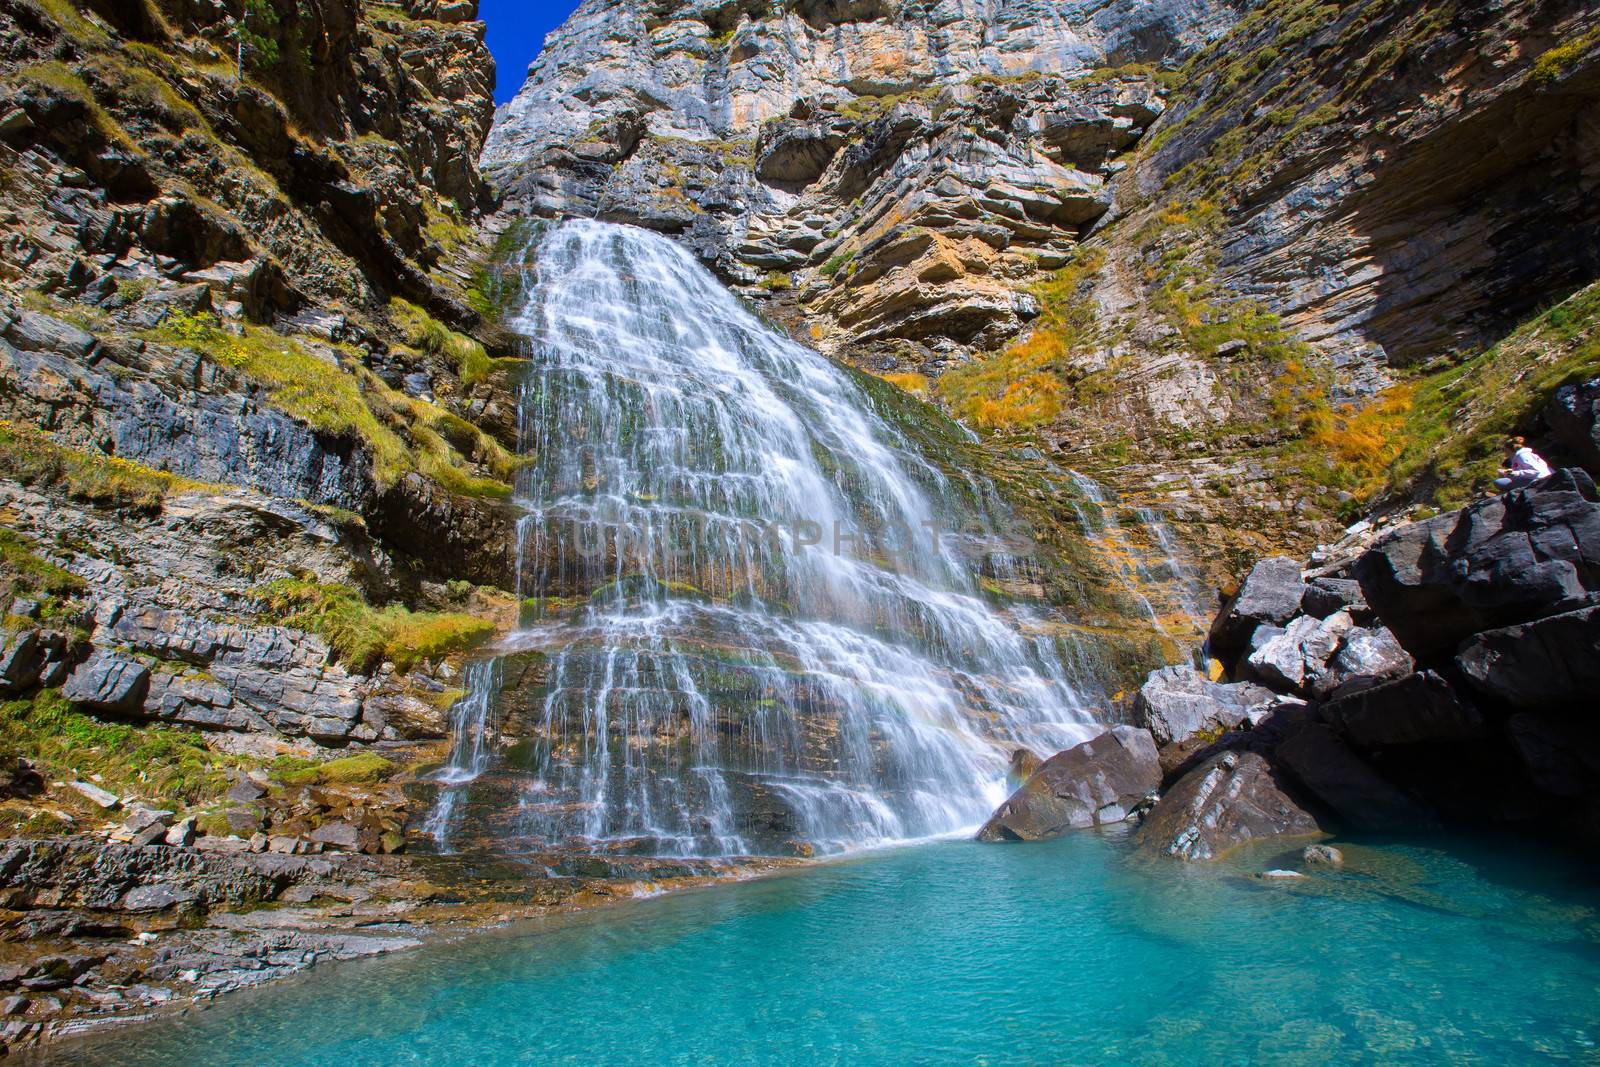 Cascada Cola de Caballo waterfall under Monte Perdido at Ordesa Valley Aragon Huesca Pyrenees of Spain